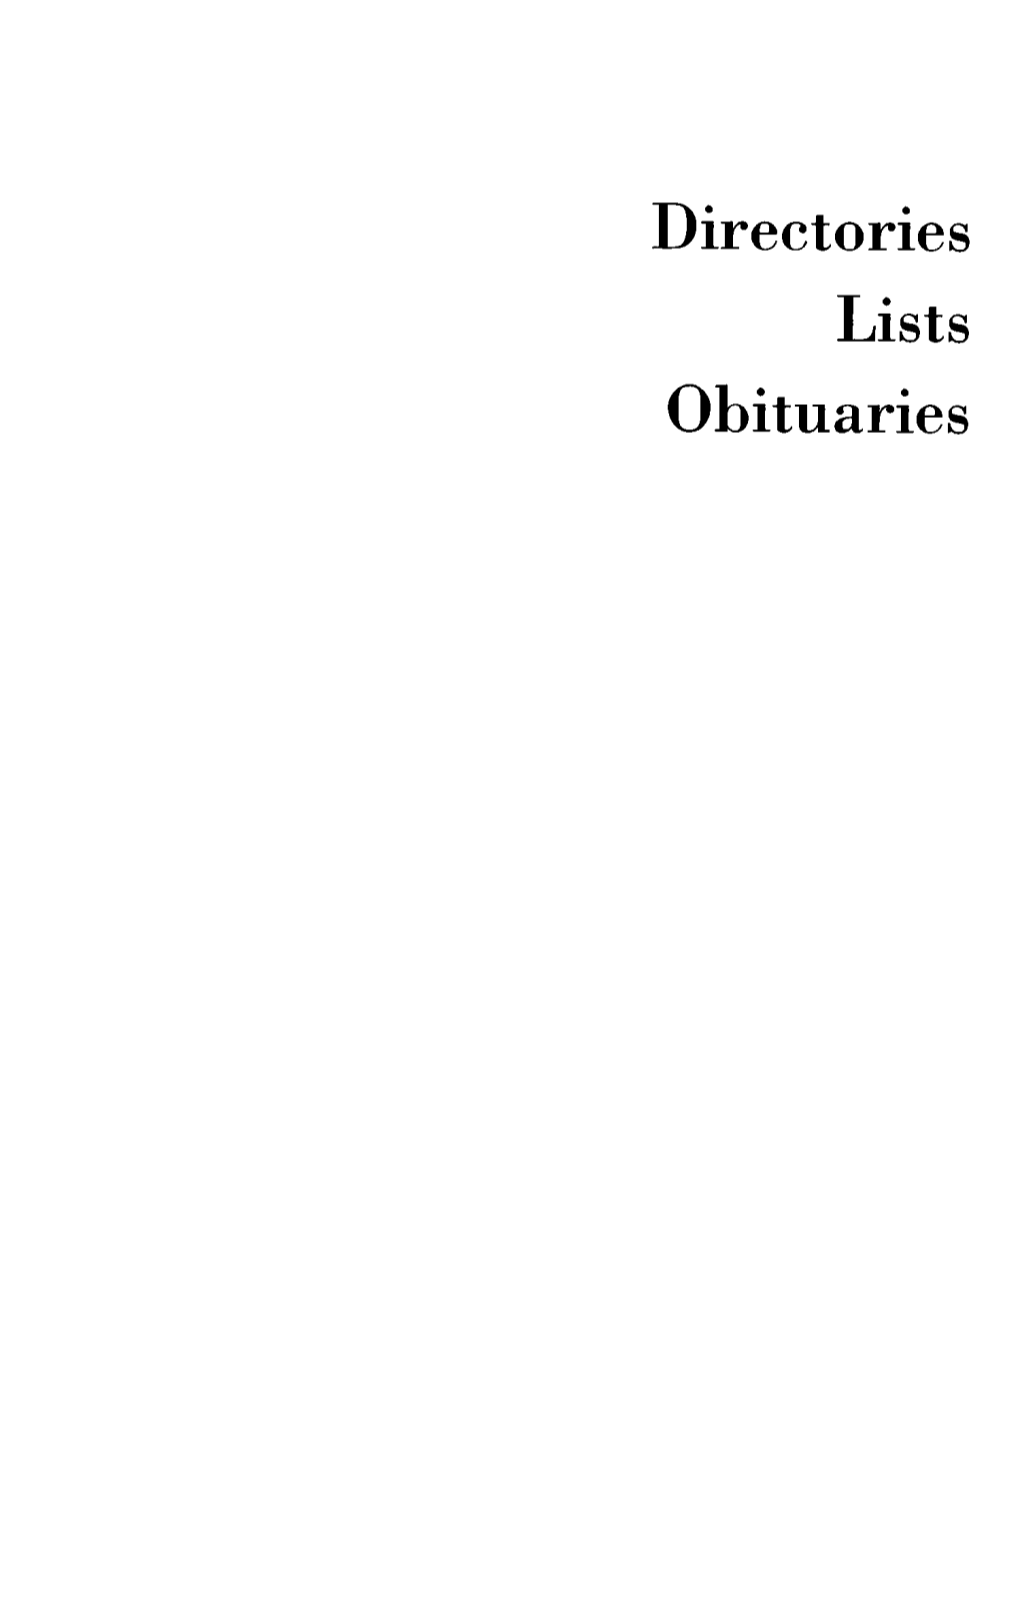 Directories Lists Obituaries National Jewish Organizations*